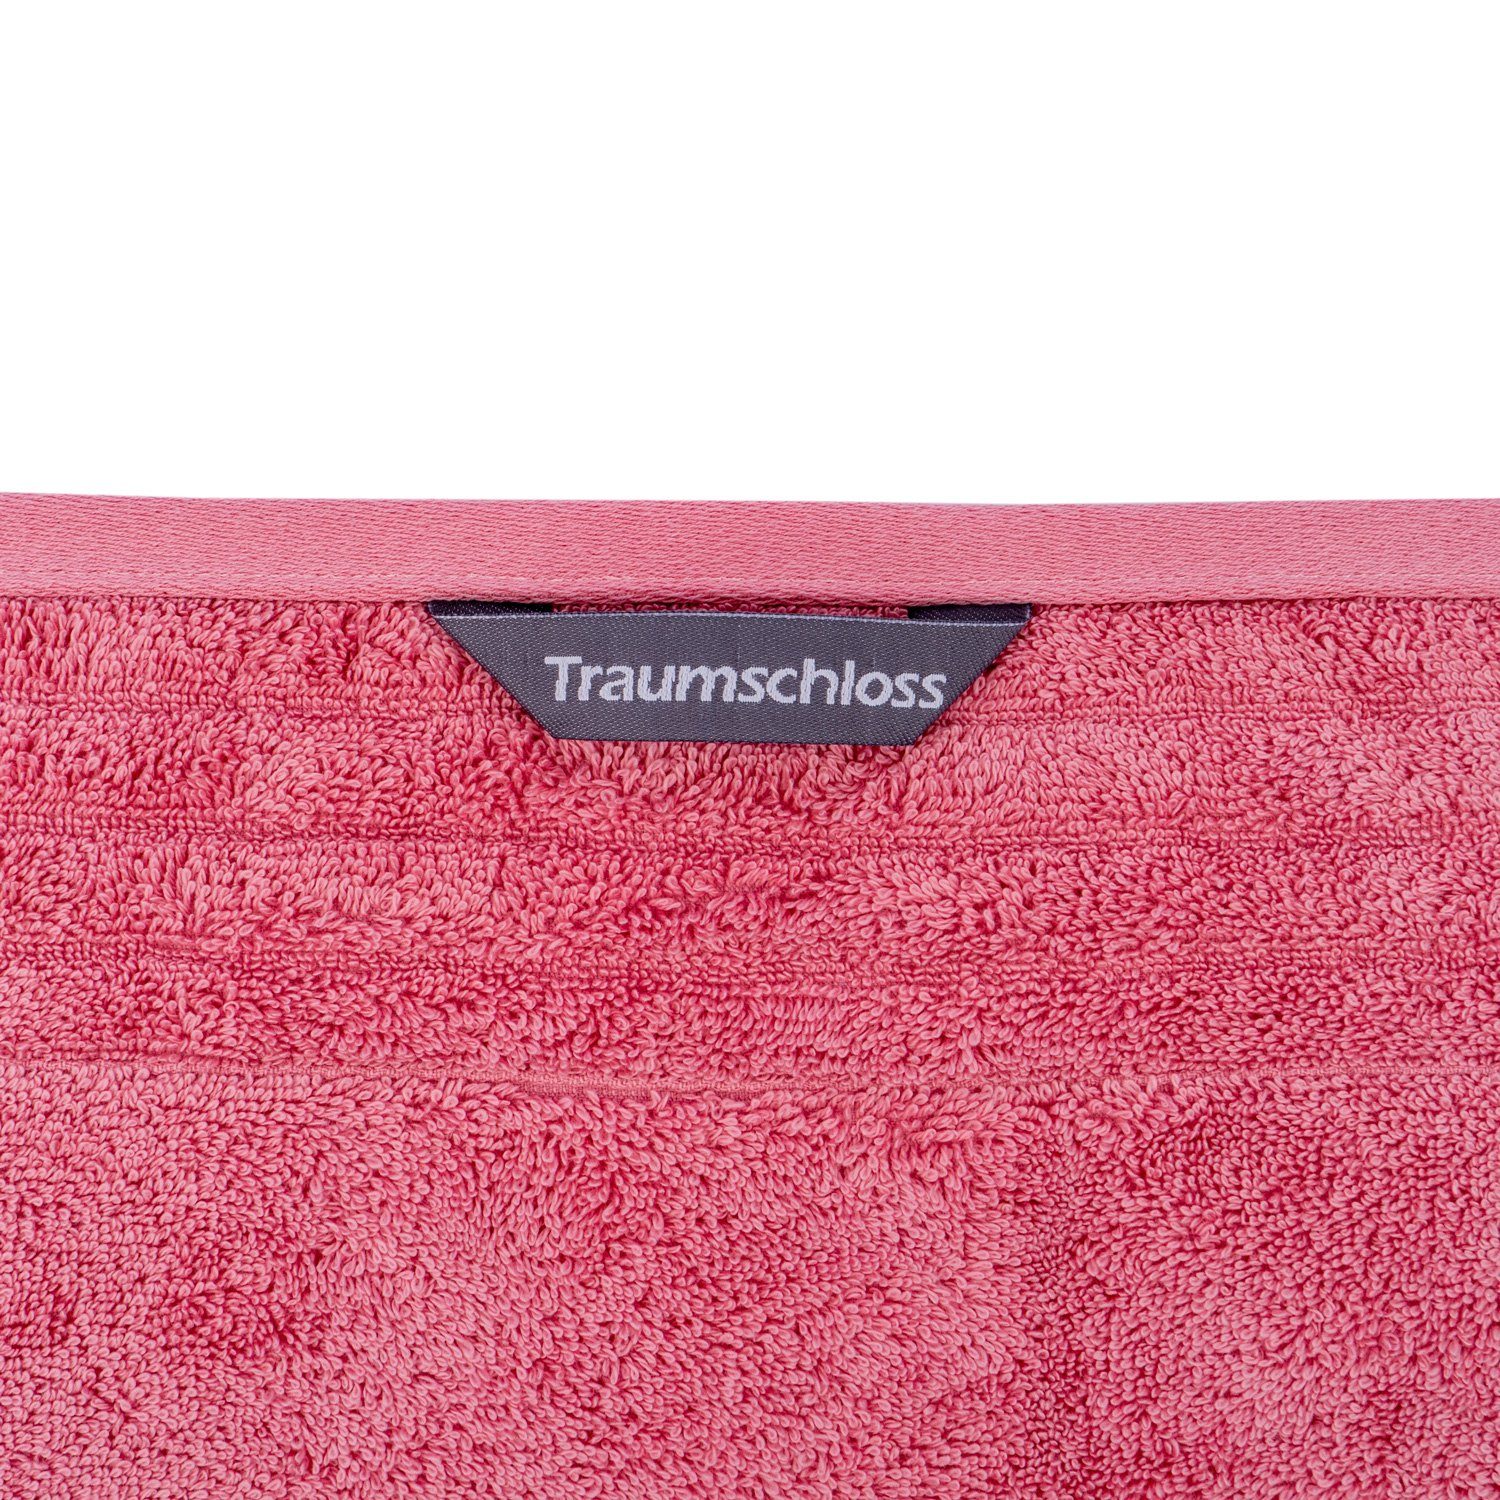 Traumschloss mit Badetuch 100% Premium-Line, Baumwolle Frottier Supima (1-St), pink 600g/m² amerikanische